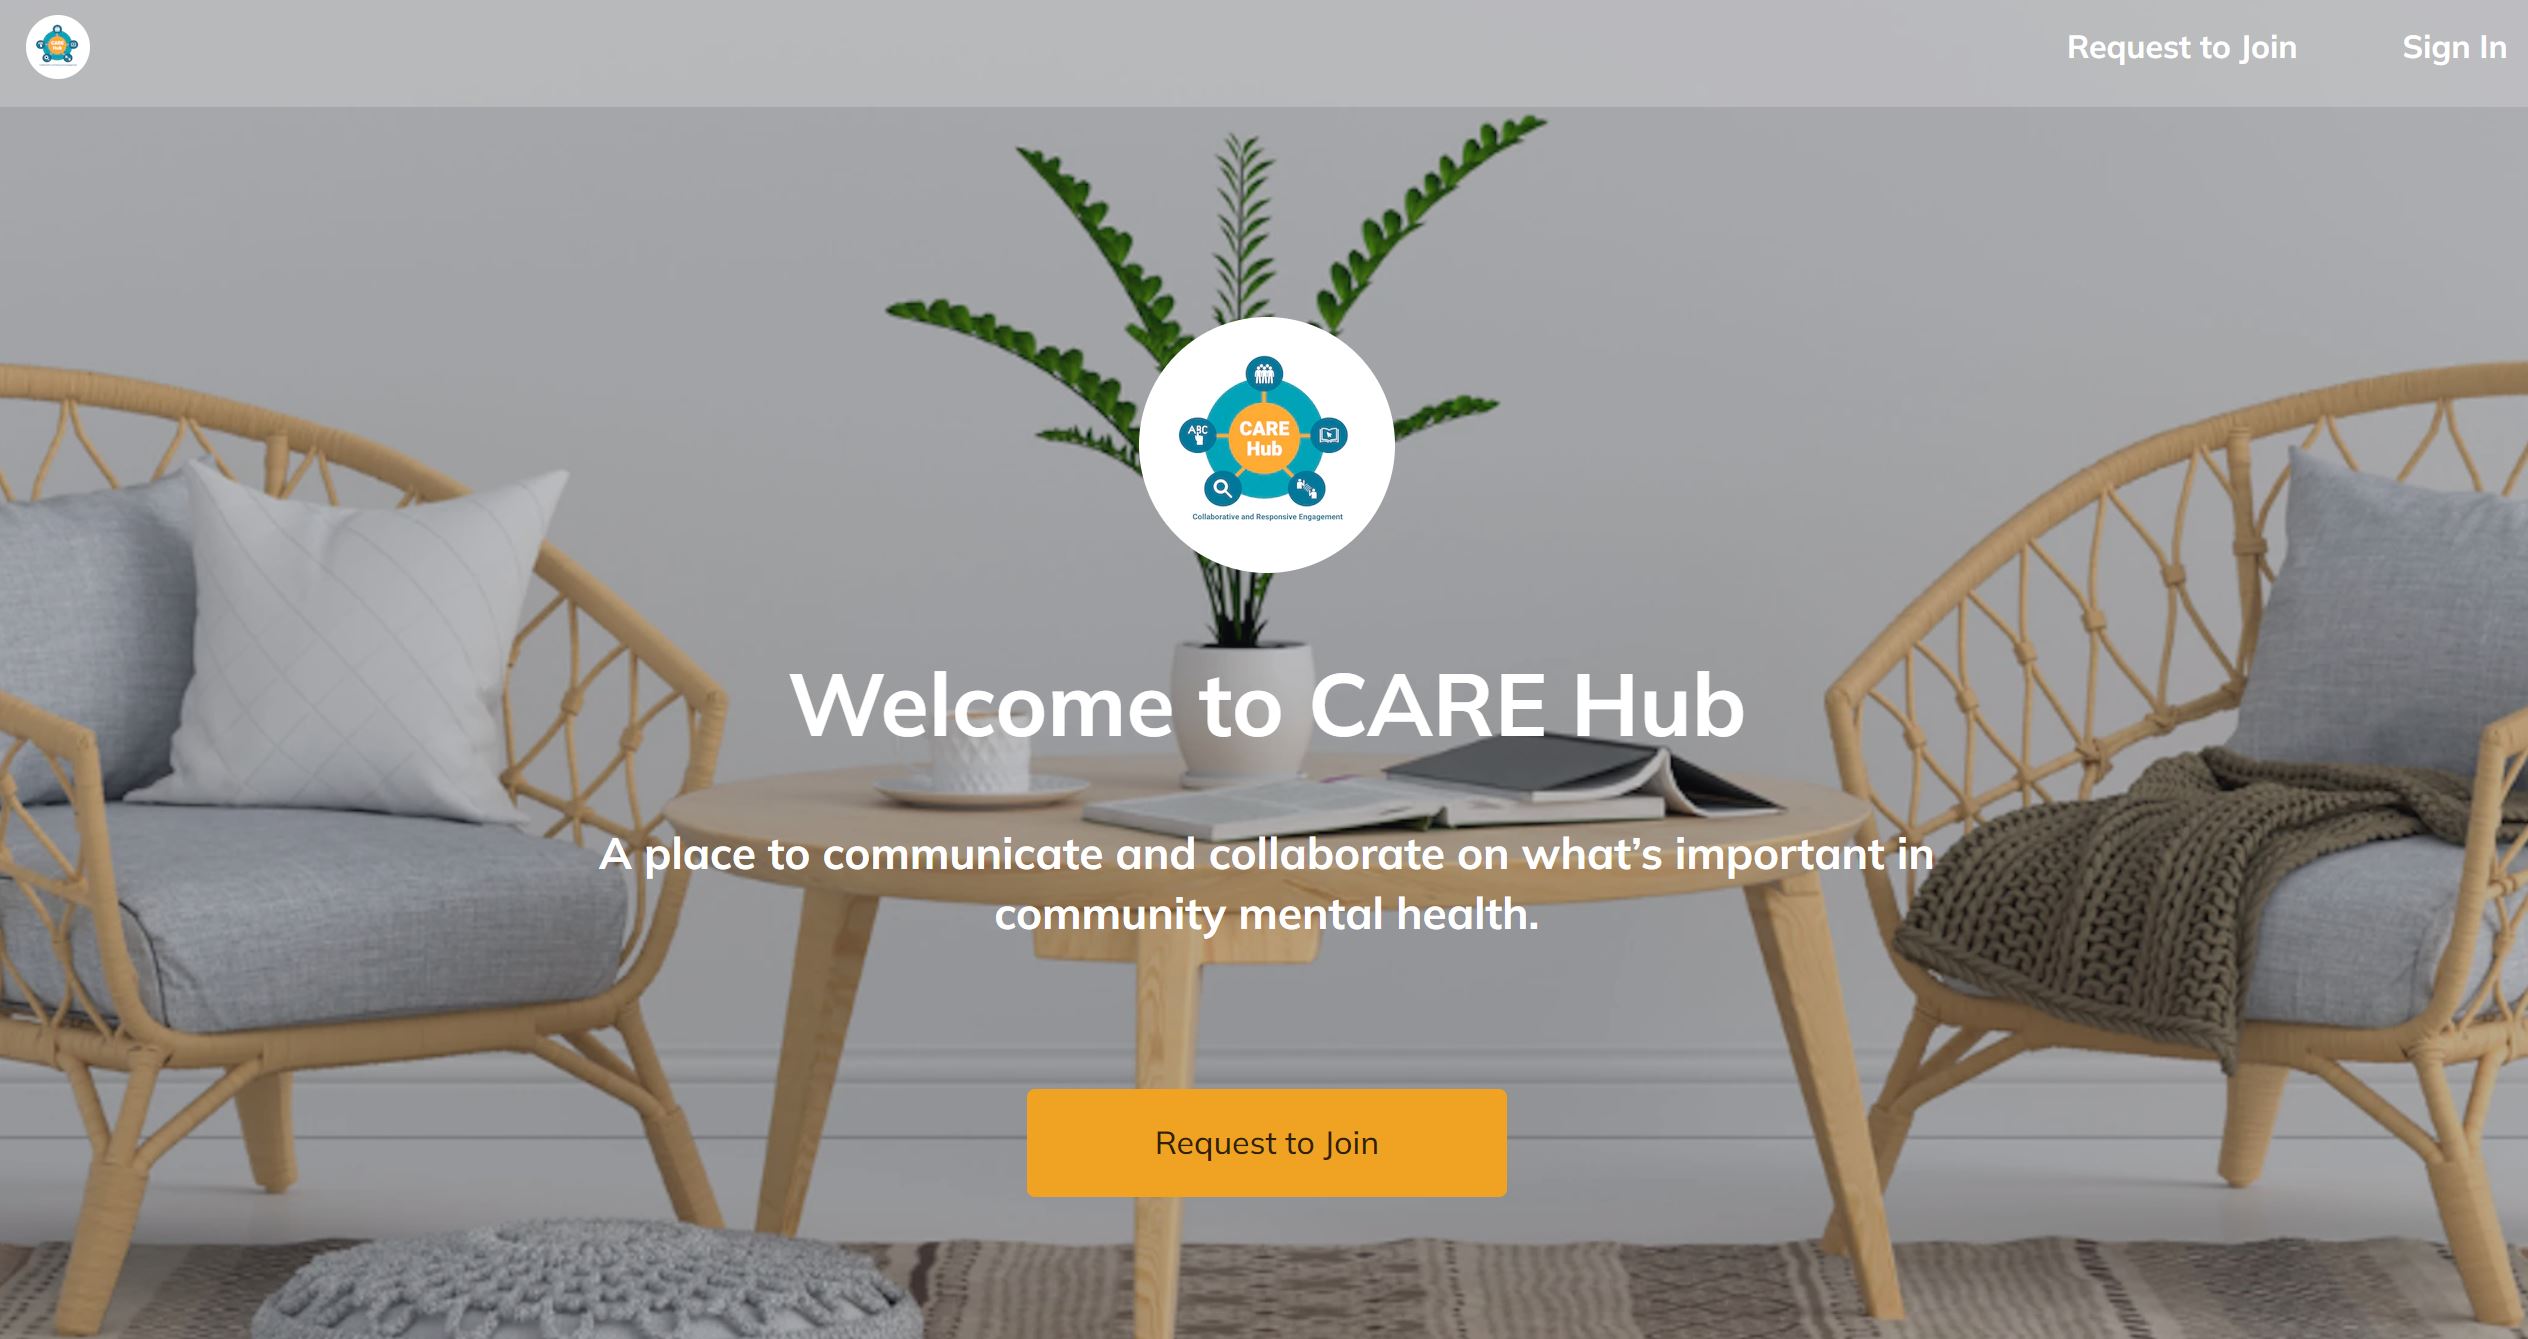 CARE Hub